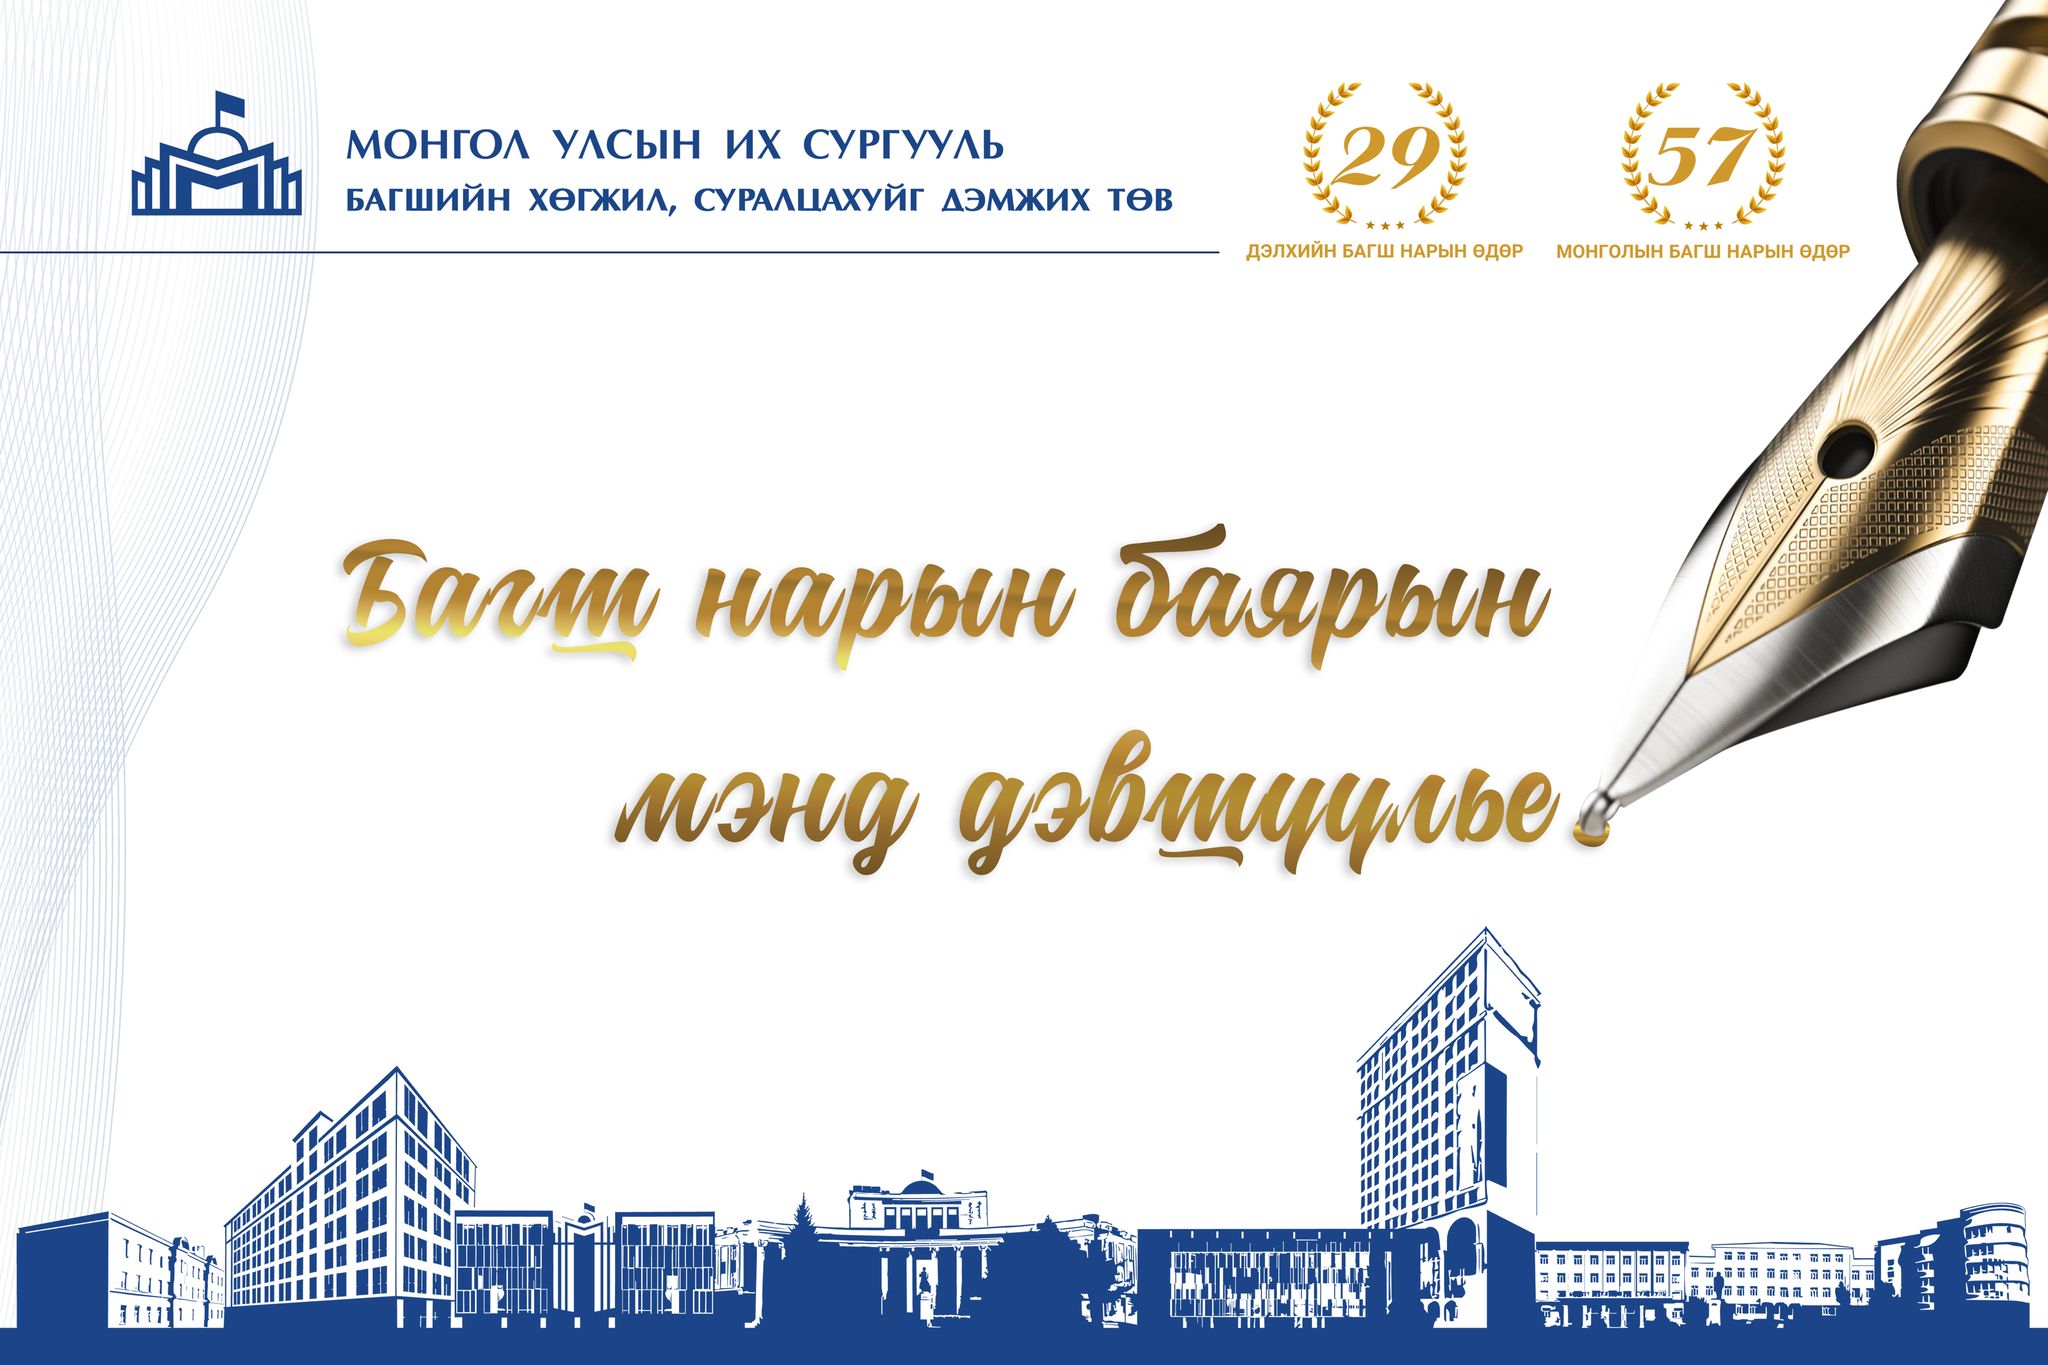 Дэлхийн багш нарын 29, Монголын багш нарын 57 дахь өдрийн баярын мэнд дэвшүүлье!